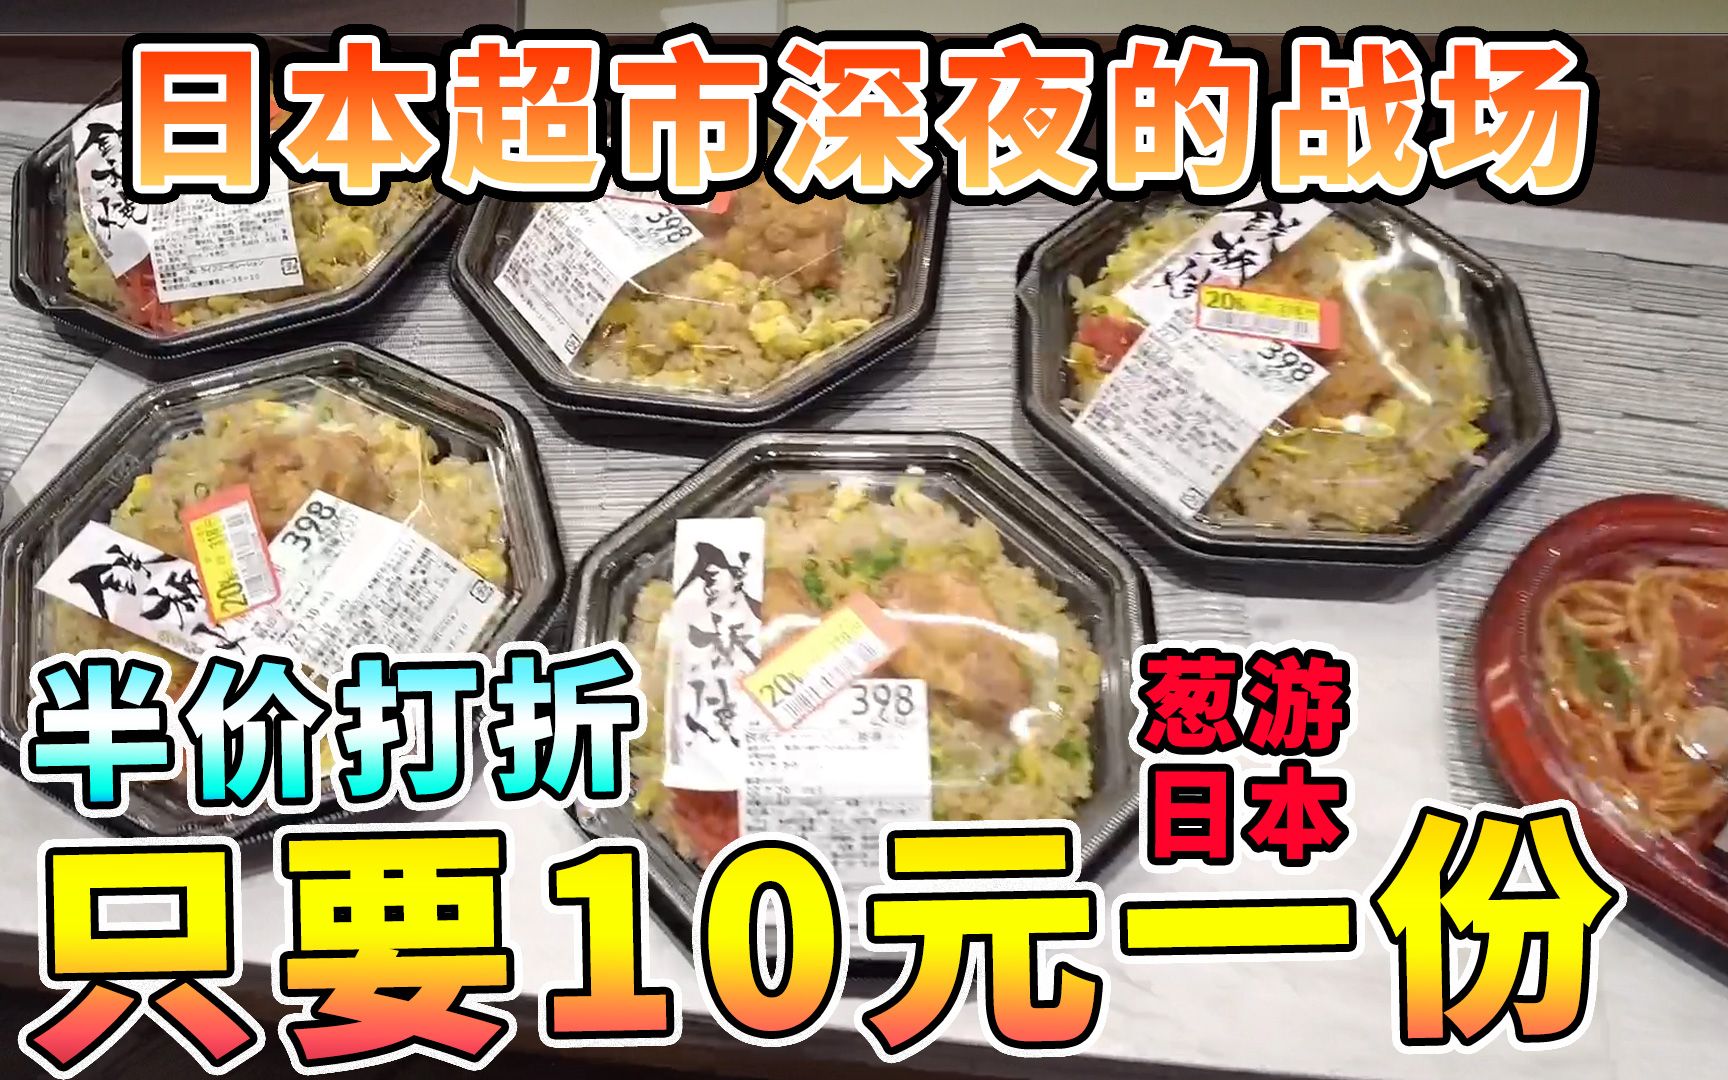 日本深夜的另类战场，超市各种肉类蔬菜便当半价打折纯靠抢，10元一份手慢就没了